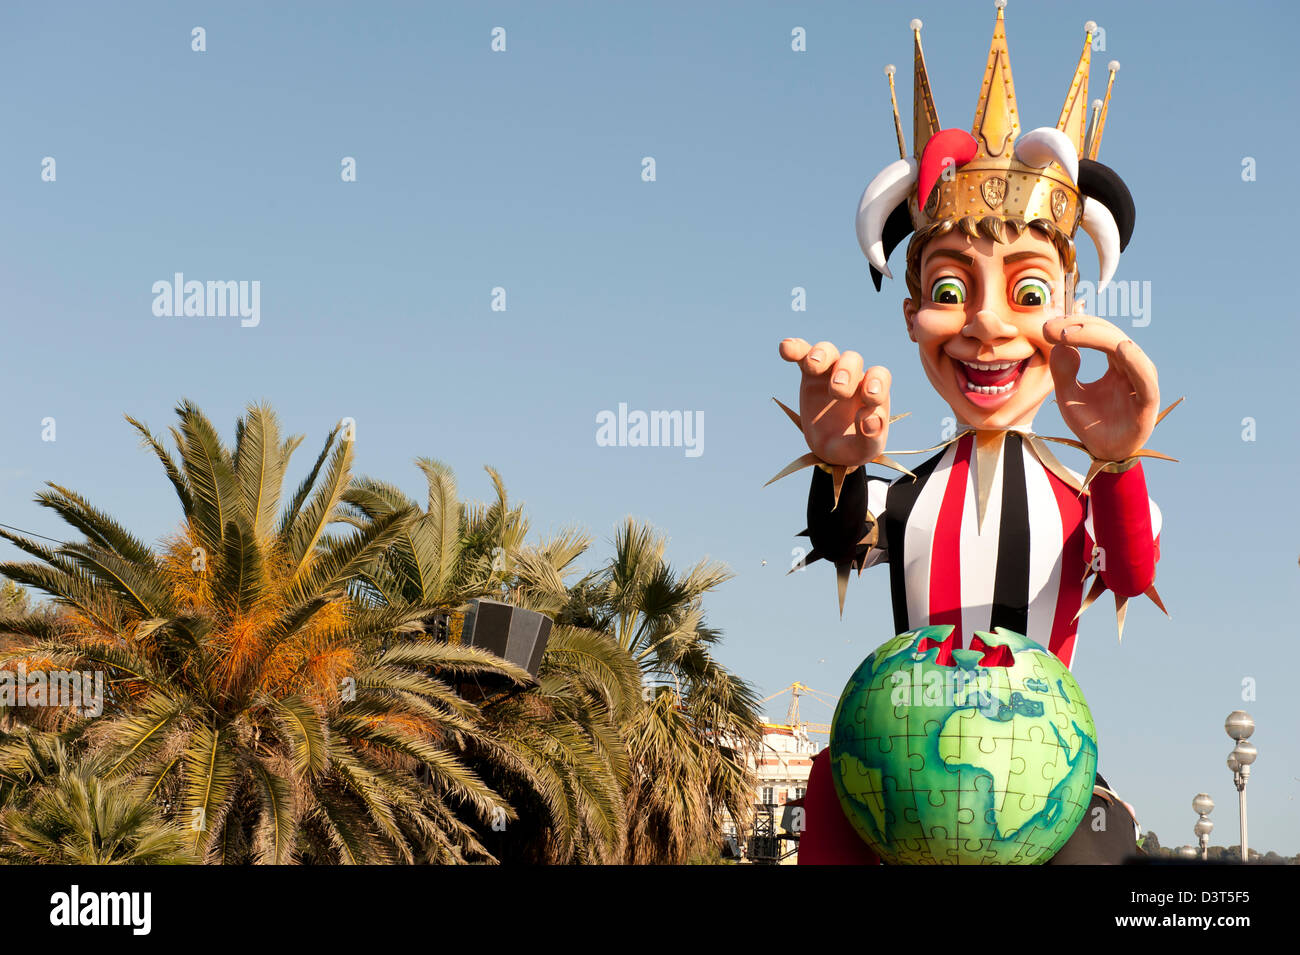 Karneval-Schwimmer auf der Parade vertreten den König Karneval in Nizza Frankreich inmitten der Palmen Stockfoto